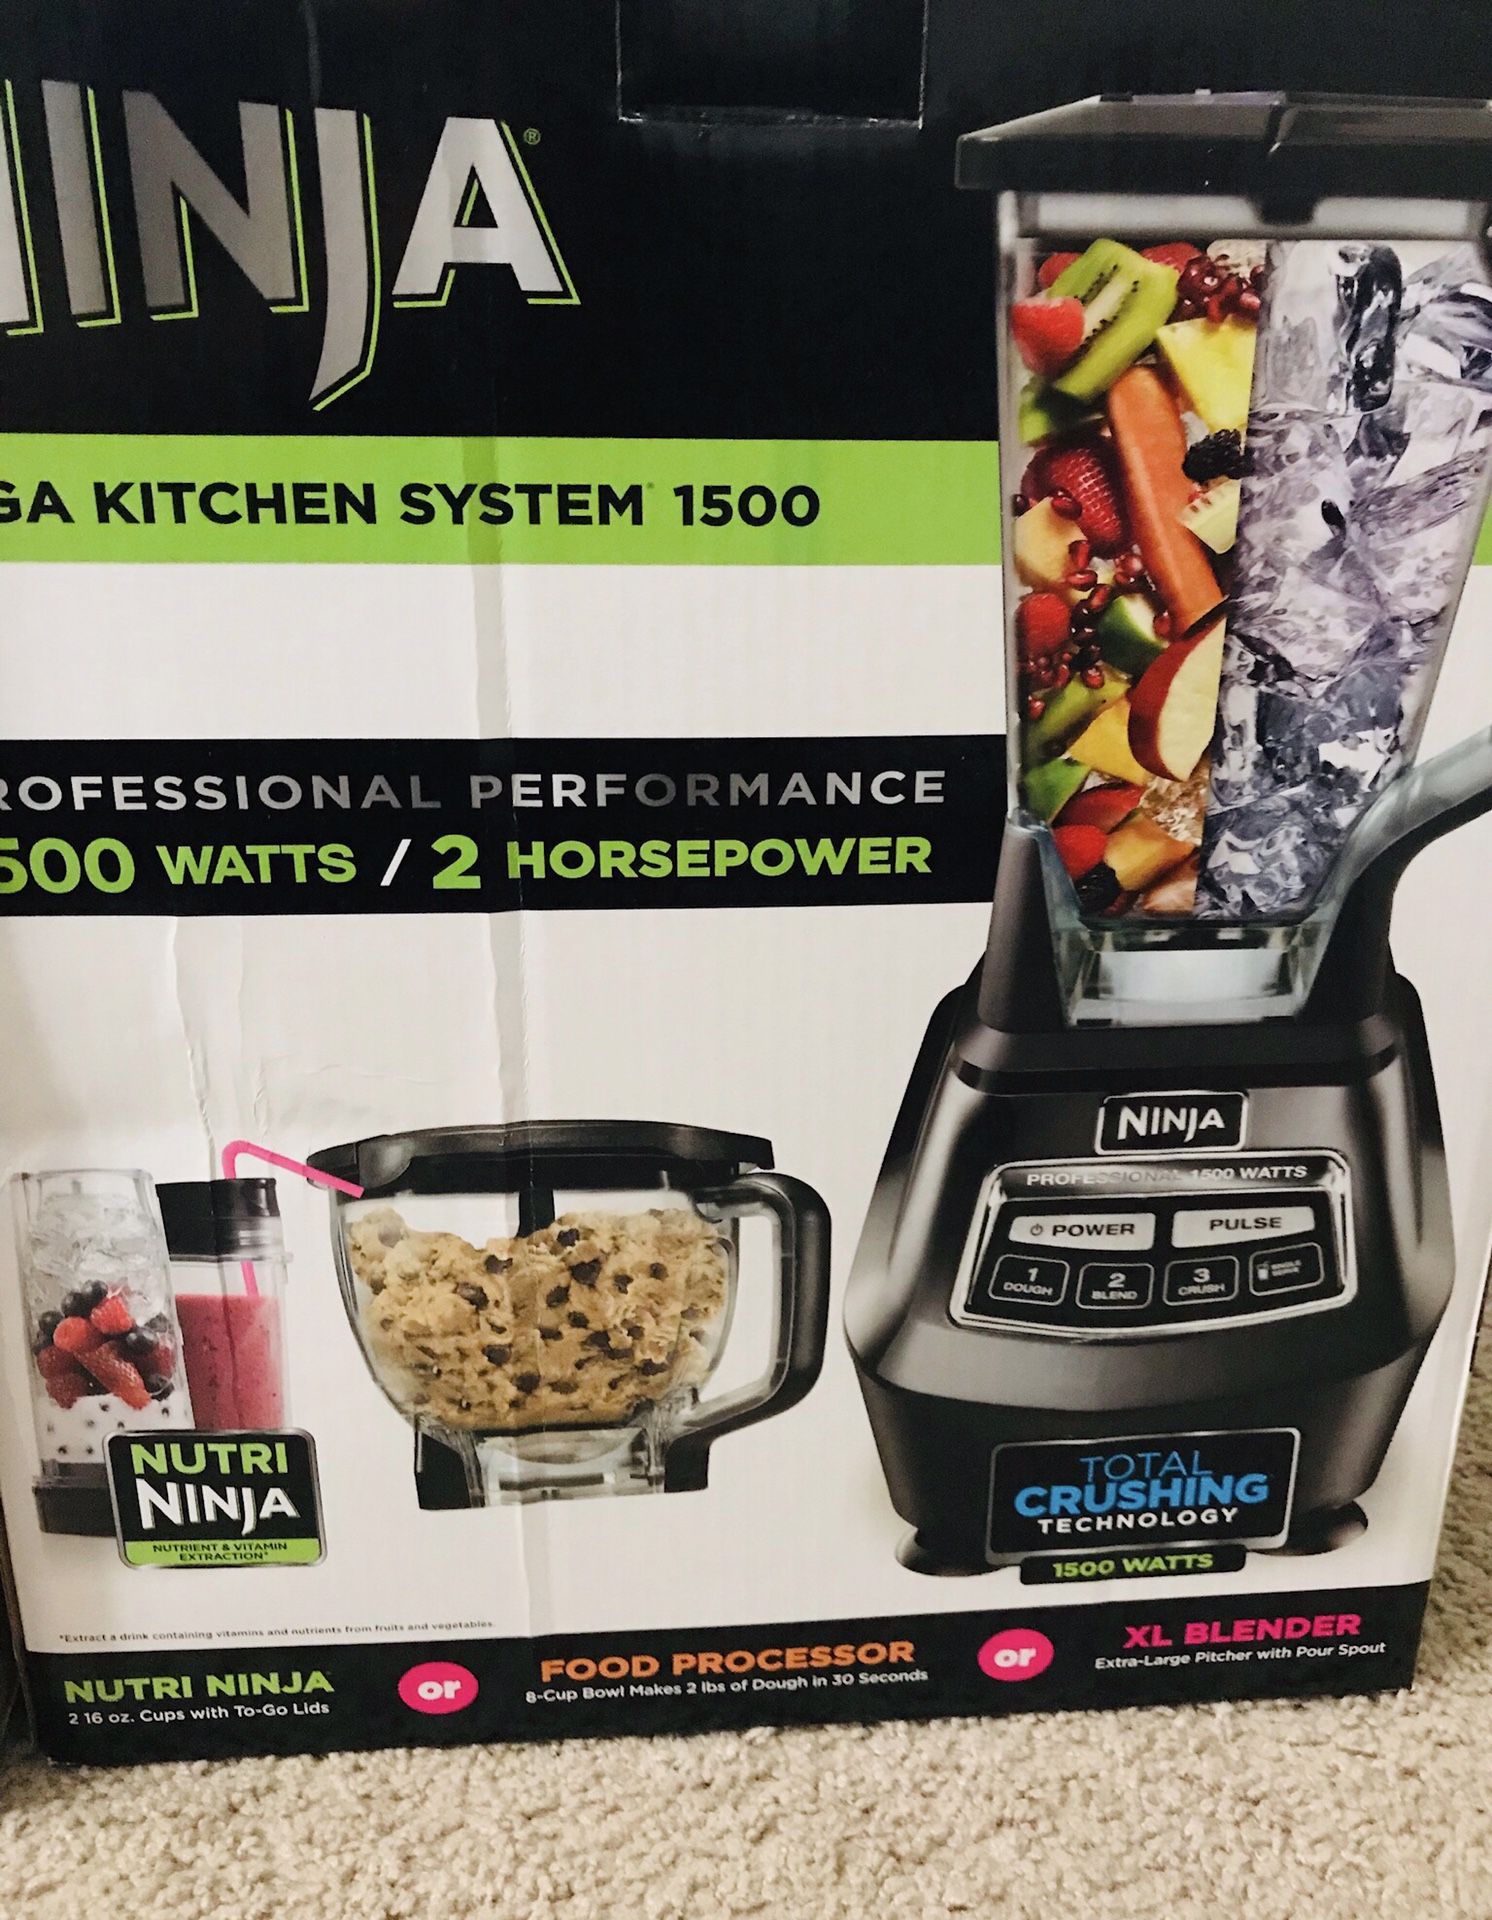 Ninja Food Processor and Blender BL 770 - 1500 watt